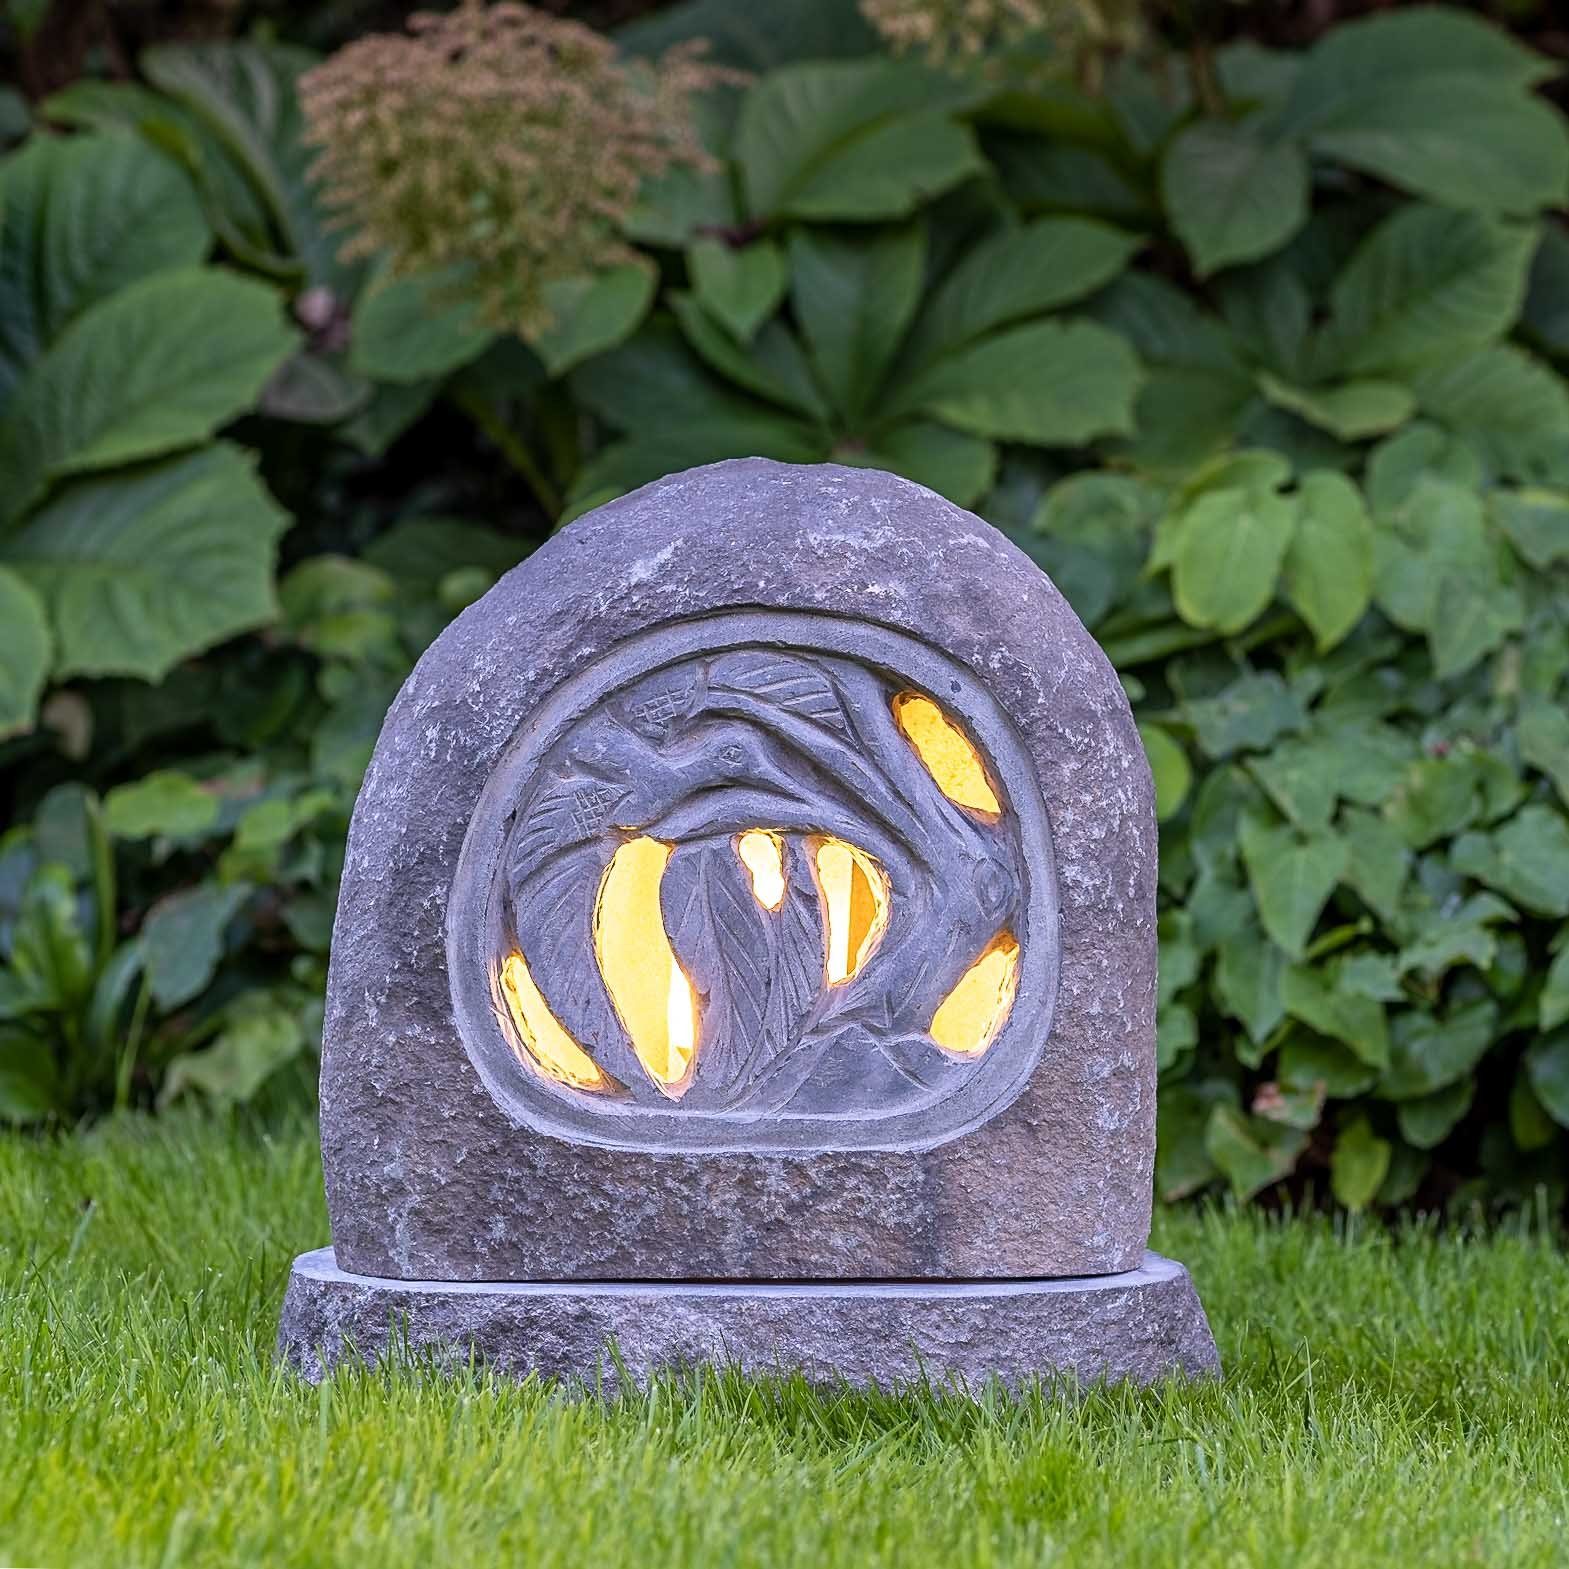 IDYL Gartenfigur Granit Beleuchtete Figur im Stein, Granitstein – ein Naturprodukt sehr robust – witterungsbeständig gegen Frost, Regen und UV-Strahlung.